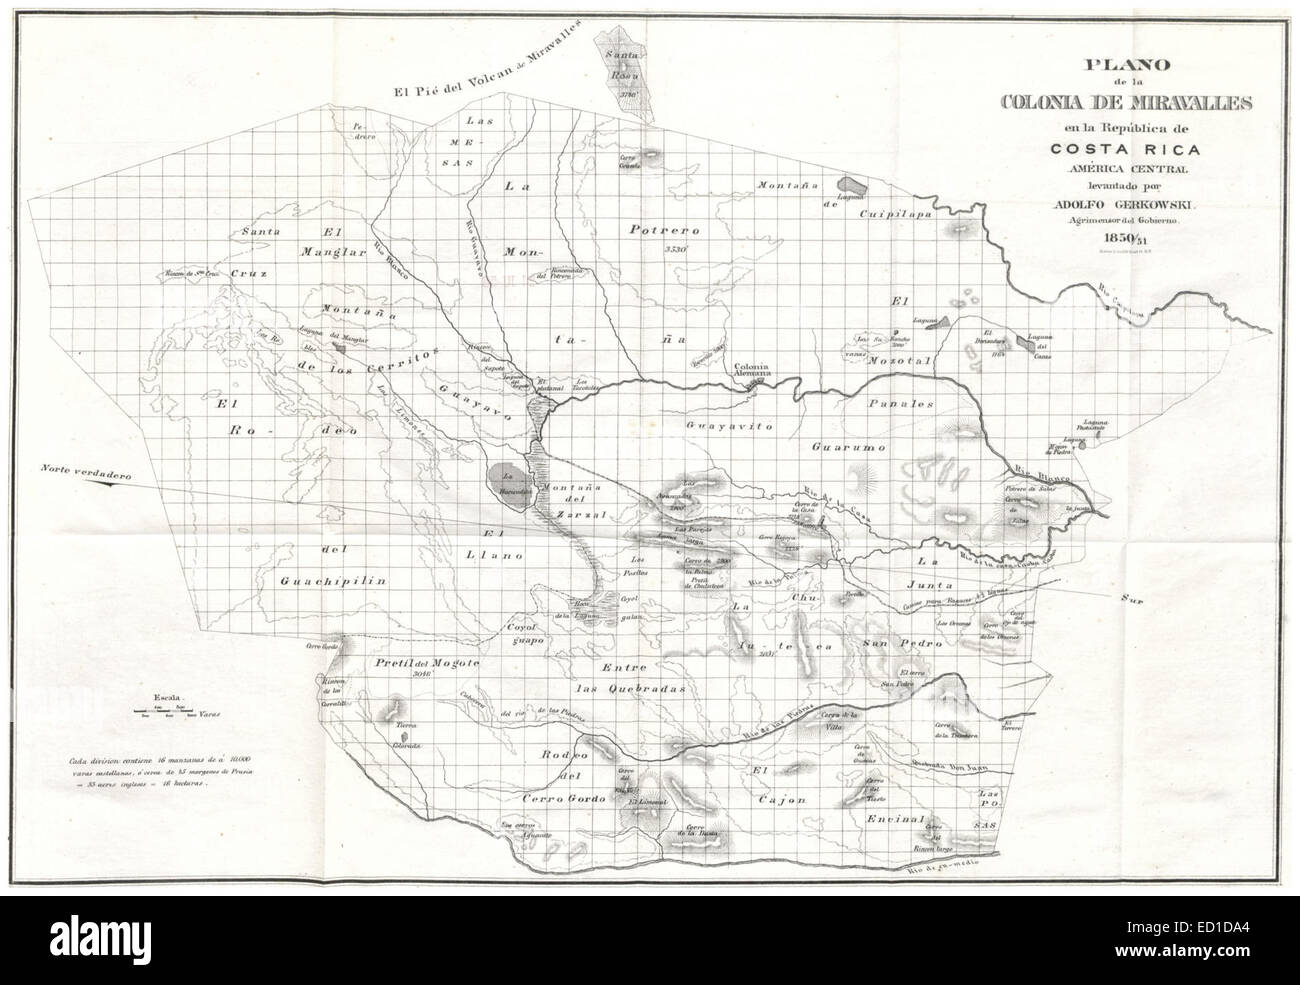 Plano de la Colonia de Miravalles en la Republica de Costa Rica, America Central (1851) Stock Photo